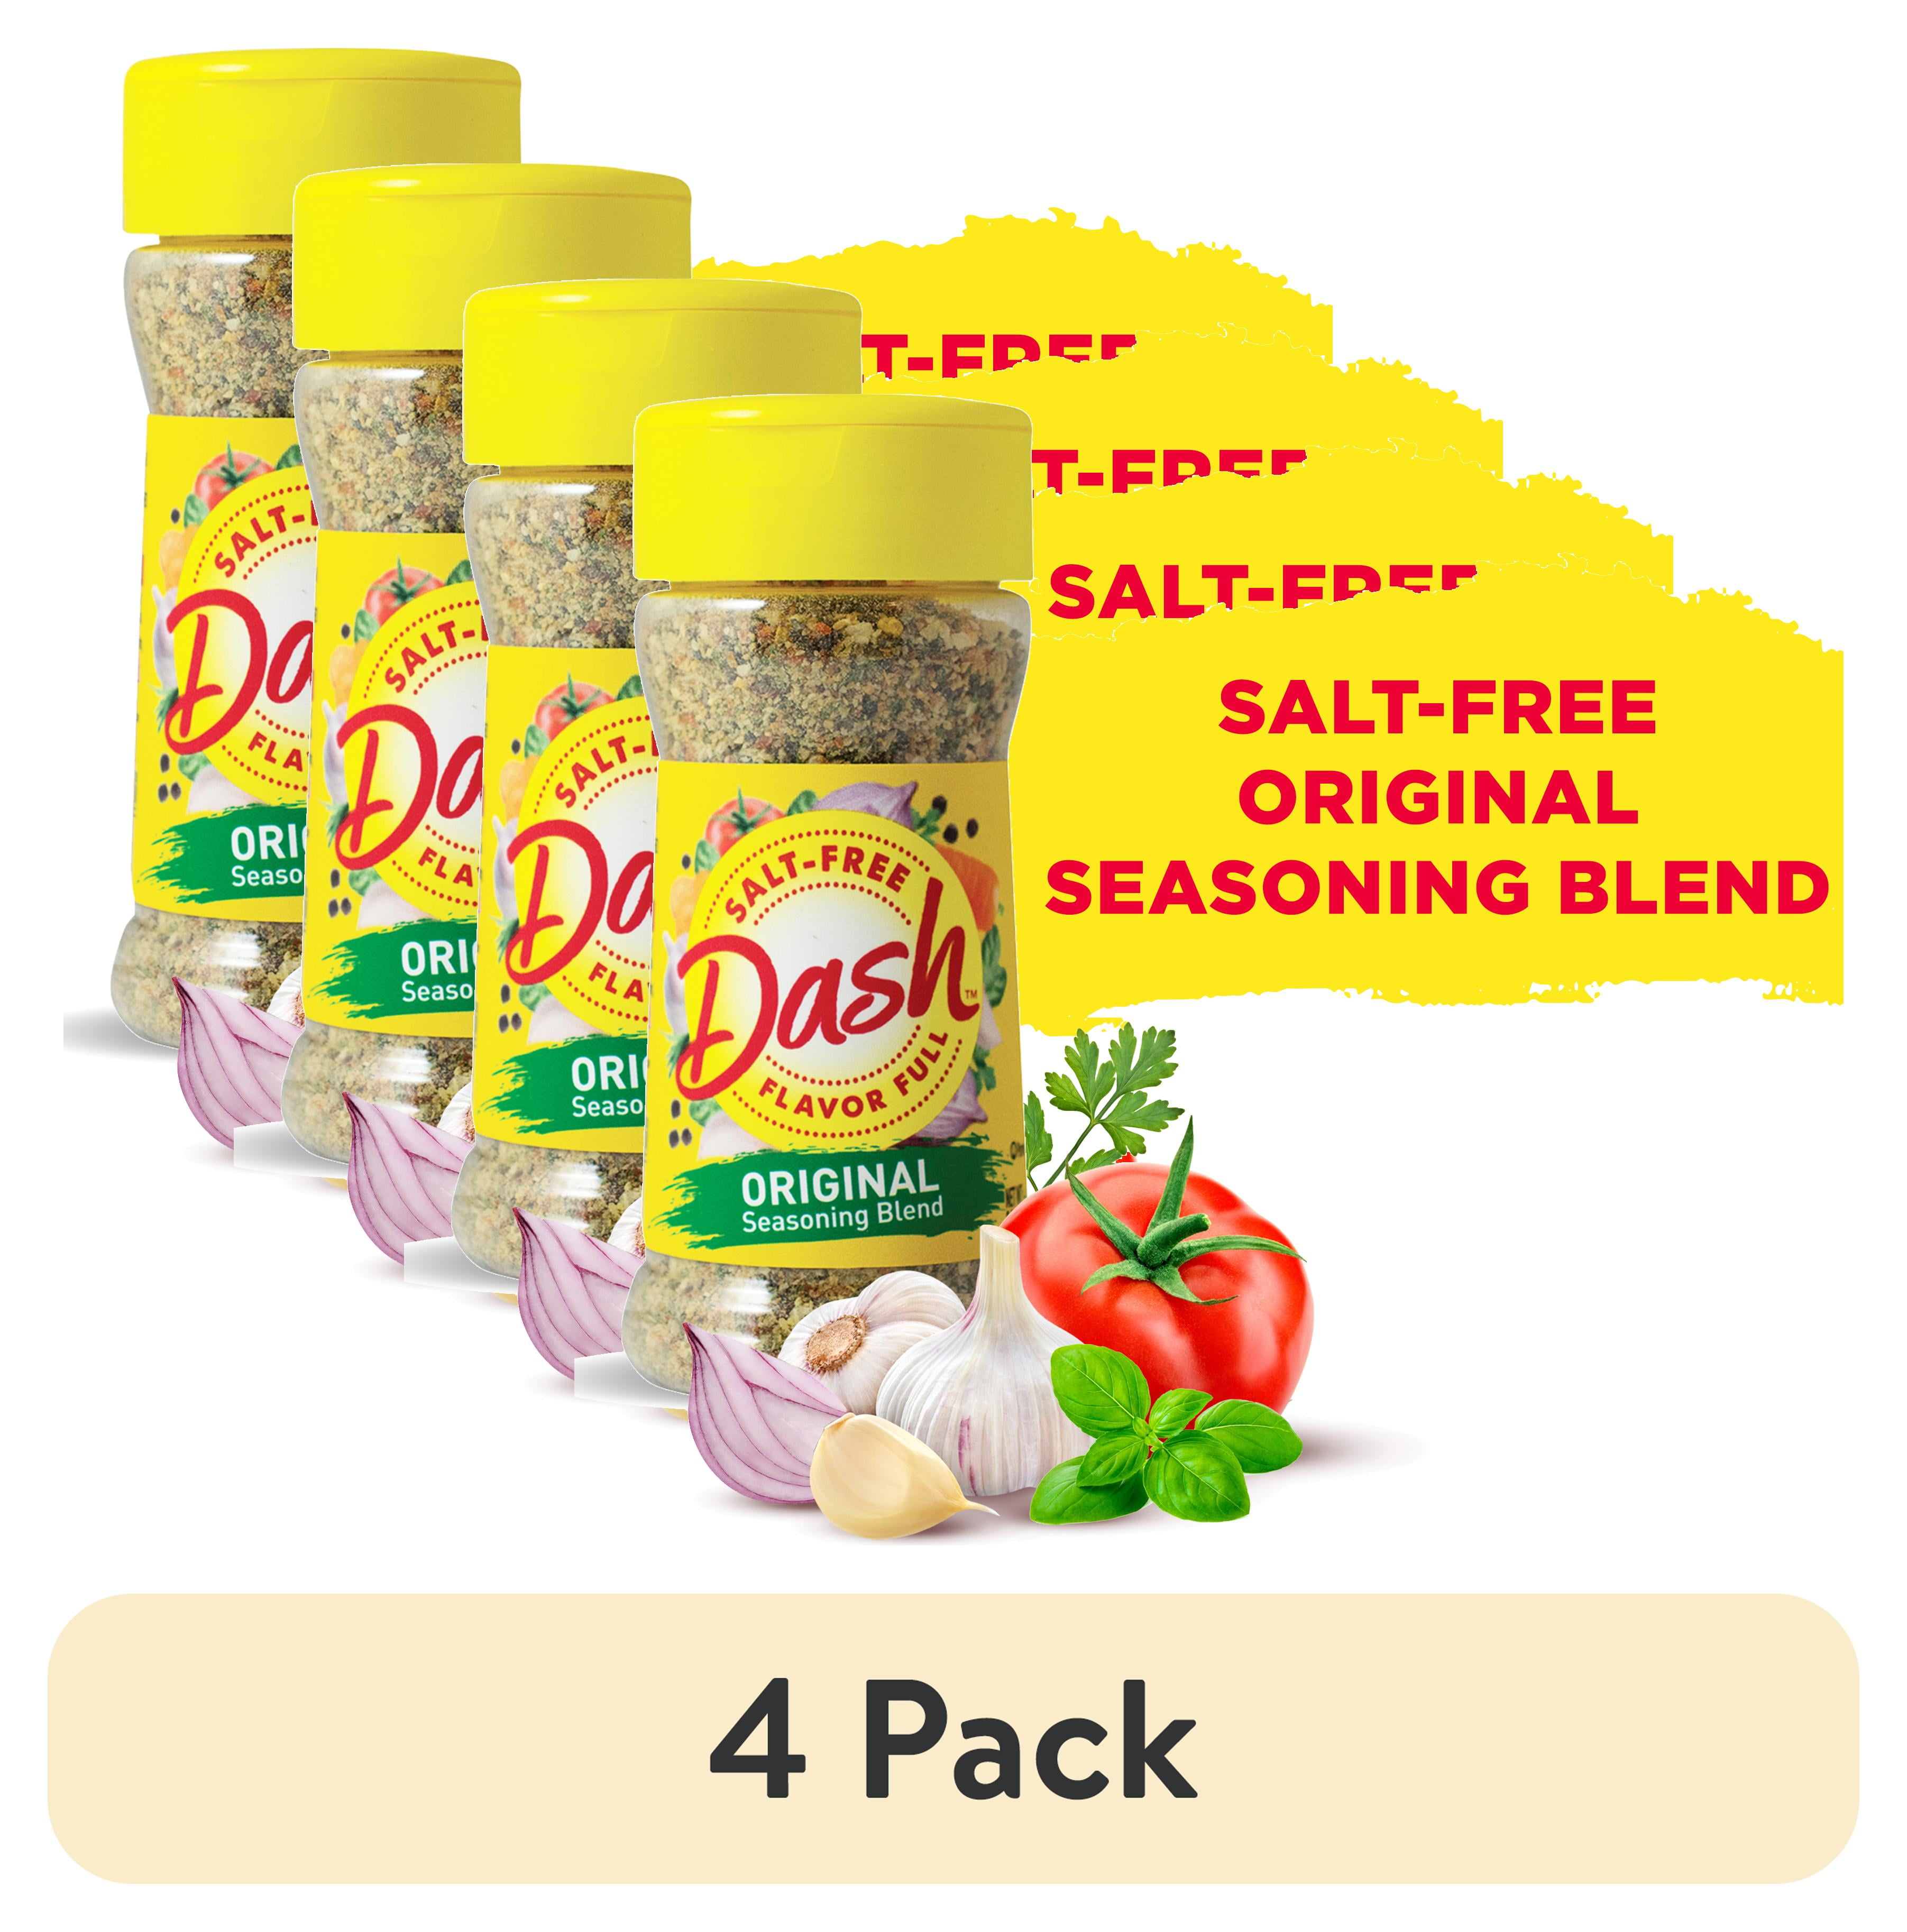 Dash Original Seasoning Blend, Salt-Free, Kosher, 2.5 oz 